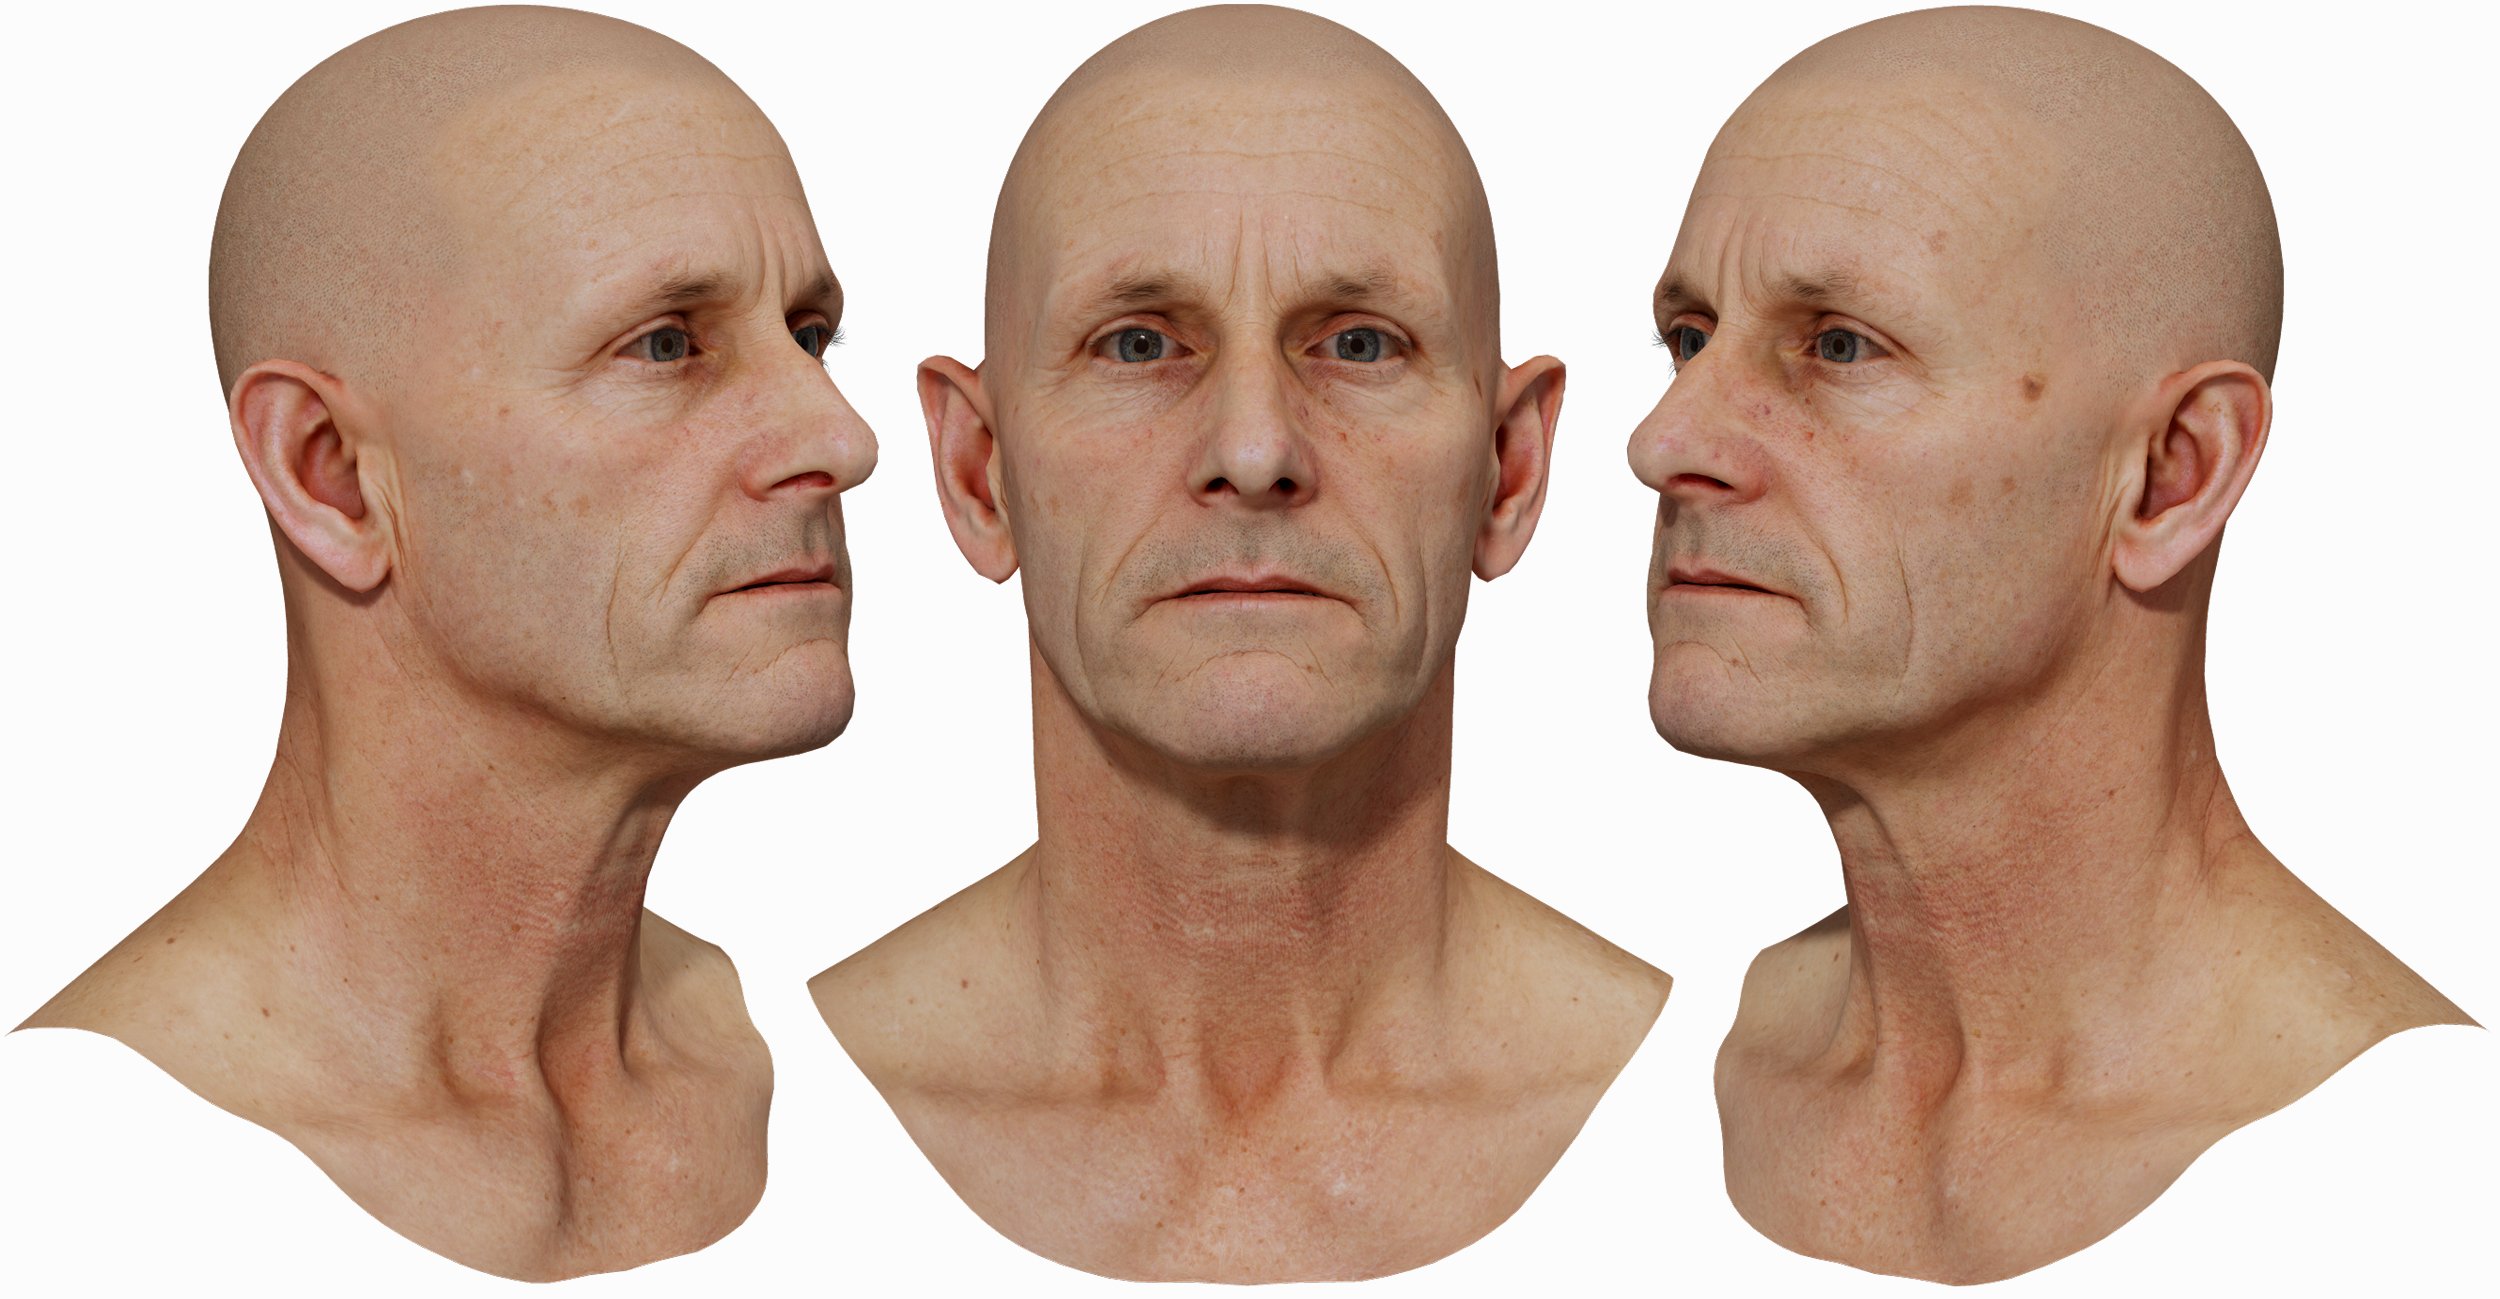 Male 3D Head model download